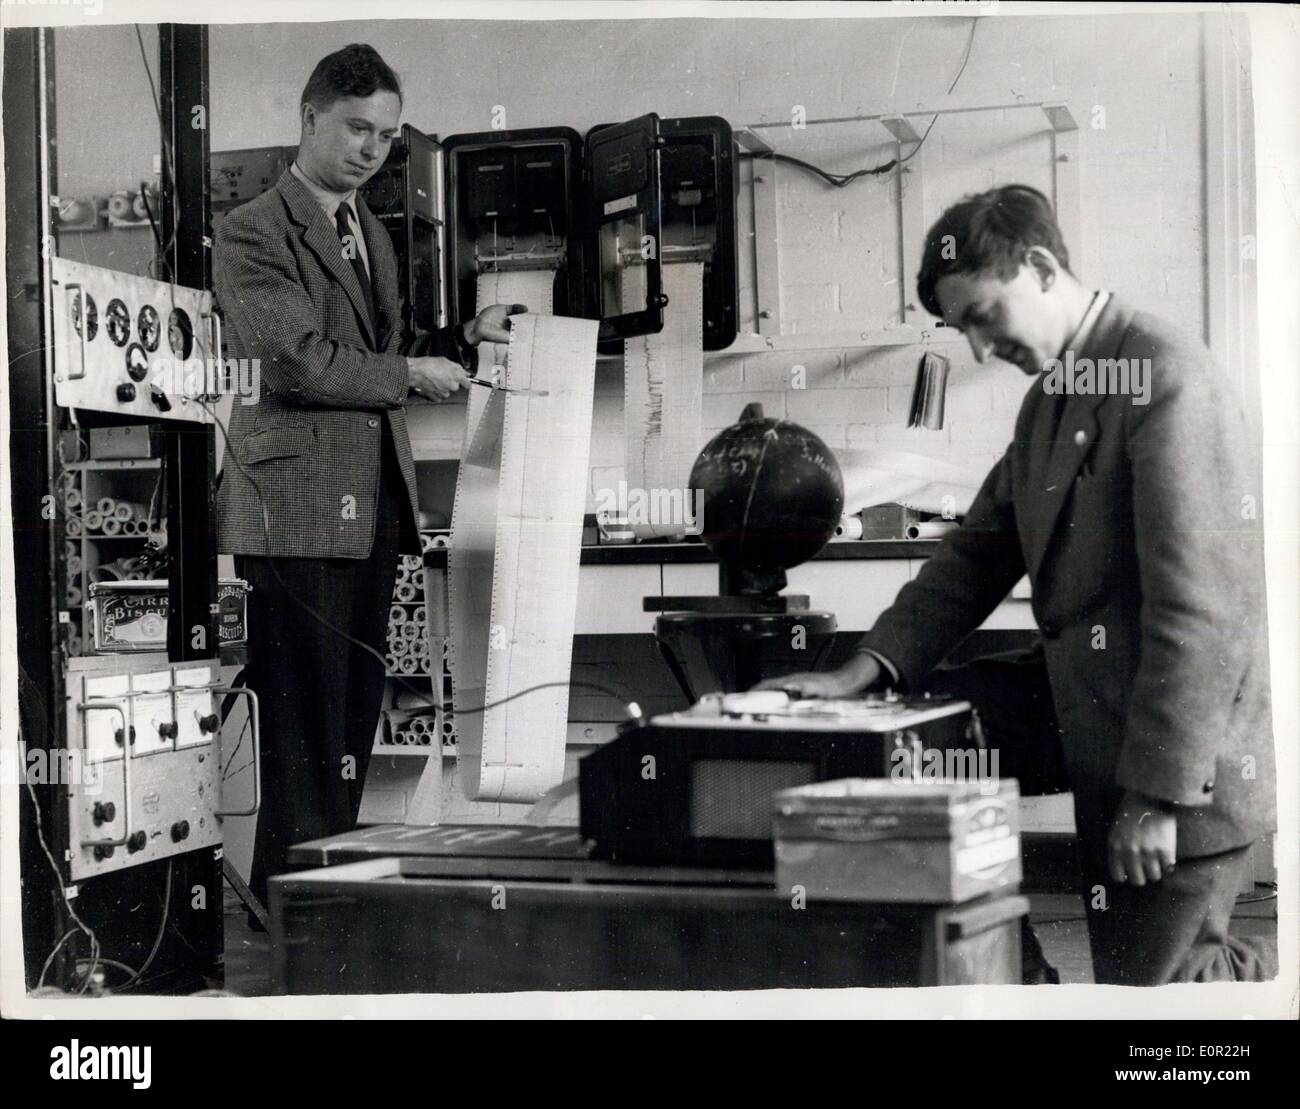 Ottobre 07, 1957 - Gli scienziati britannici Tracking ''Stella Rossa" a Cambridge. Vegliare sul satellite russo: un team di 12 gli scienziati britannici tracking è quello che è stato chiamato il ''Stella Rossa" all'Università di Cambridge - dove l'atomo era di prima divisione. Qui è il Sig. Martin Ryle (39) direttore dell'Università osservatorio radio, guarda a un grafico della luna artificiale di corso.. Mostra immagine: due degli esperti nel laboratorio del laboratorio Cavenish, Cambridge sono da sinistra a destra:- Sig. B. Elsmore di Pembroke College- e ascoltando la registrazione - il sig. G.R. Whitefield della Trinità. Foto Stock